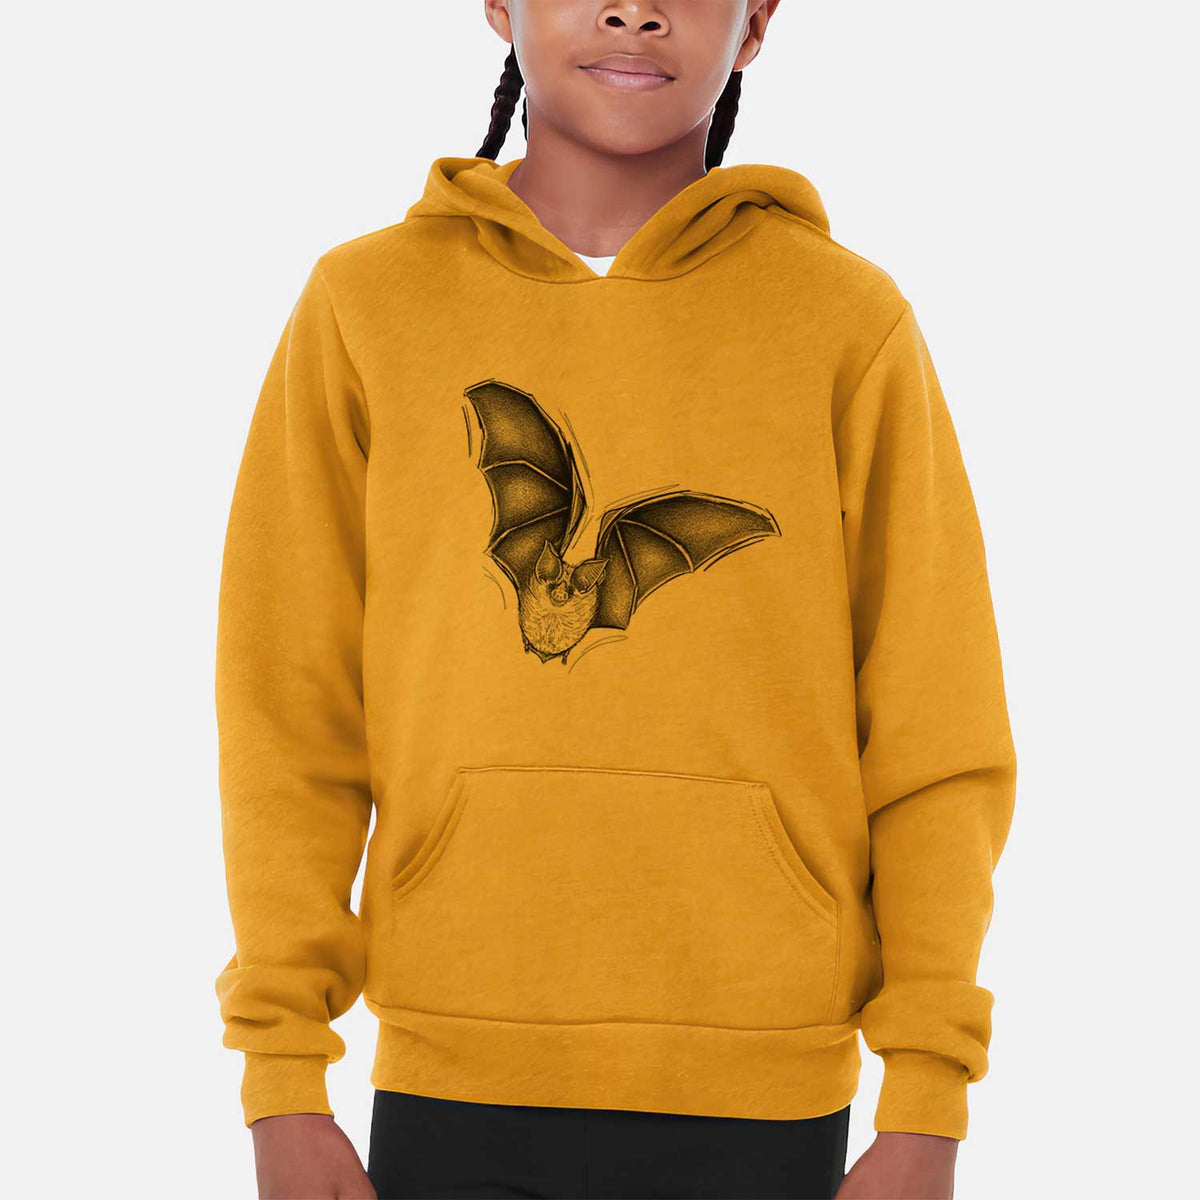 Macrotus californicus - California Leaf-nosed Bat - Youth Hoodie Sweatshirt